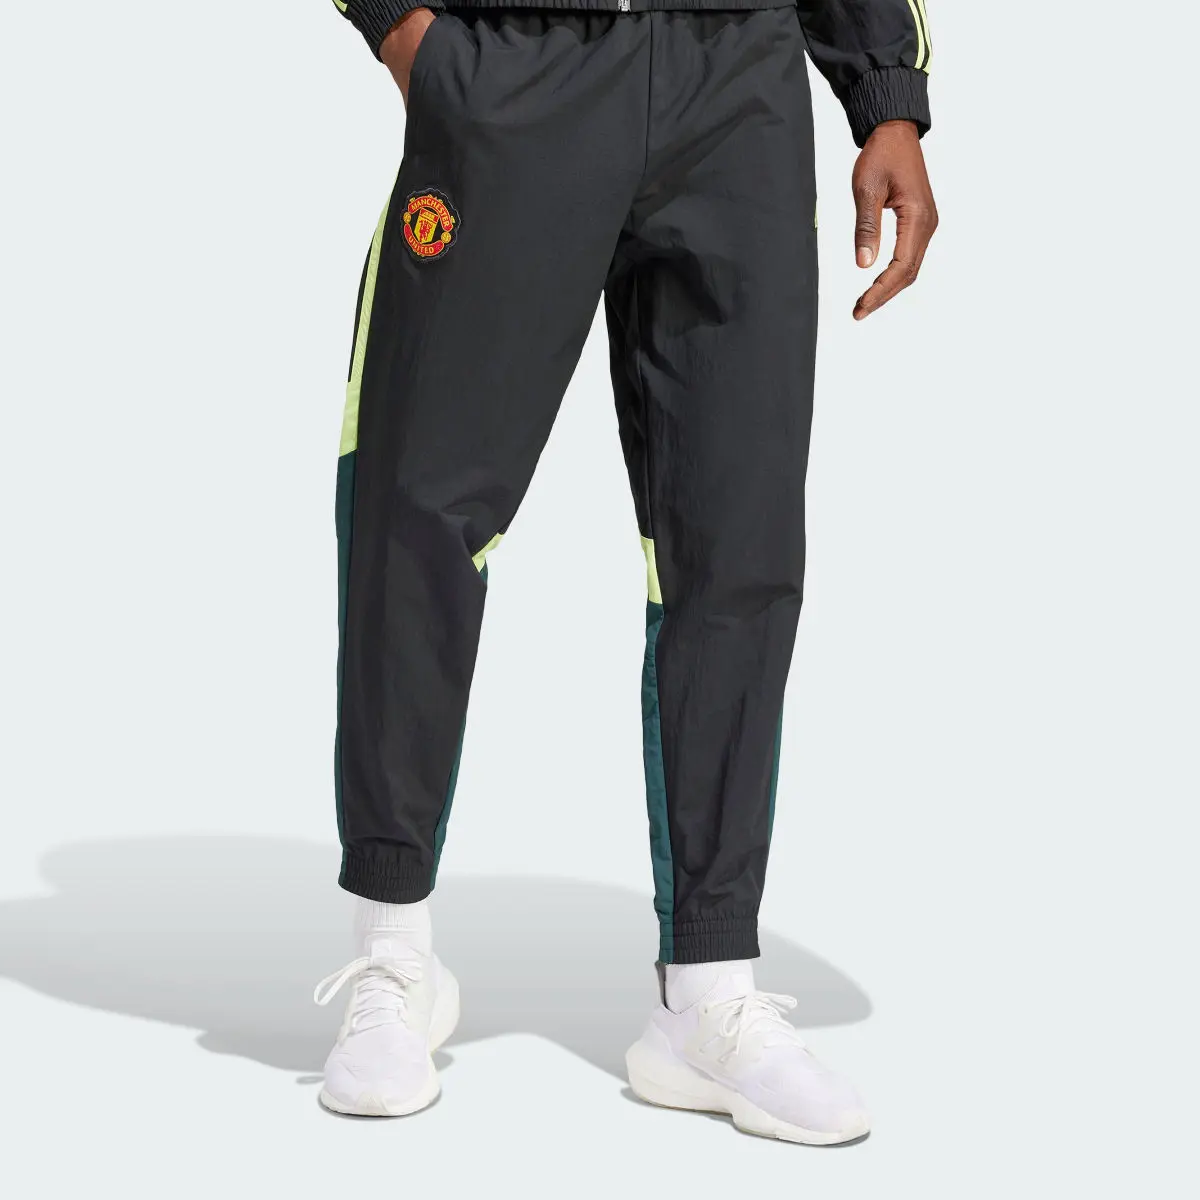 Adidas Pantalon de survêtement toile Manchester United. 1